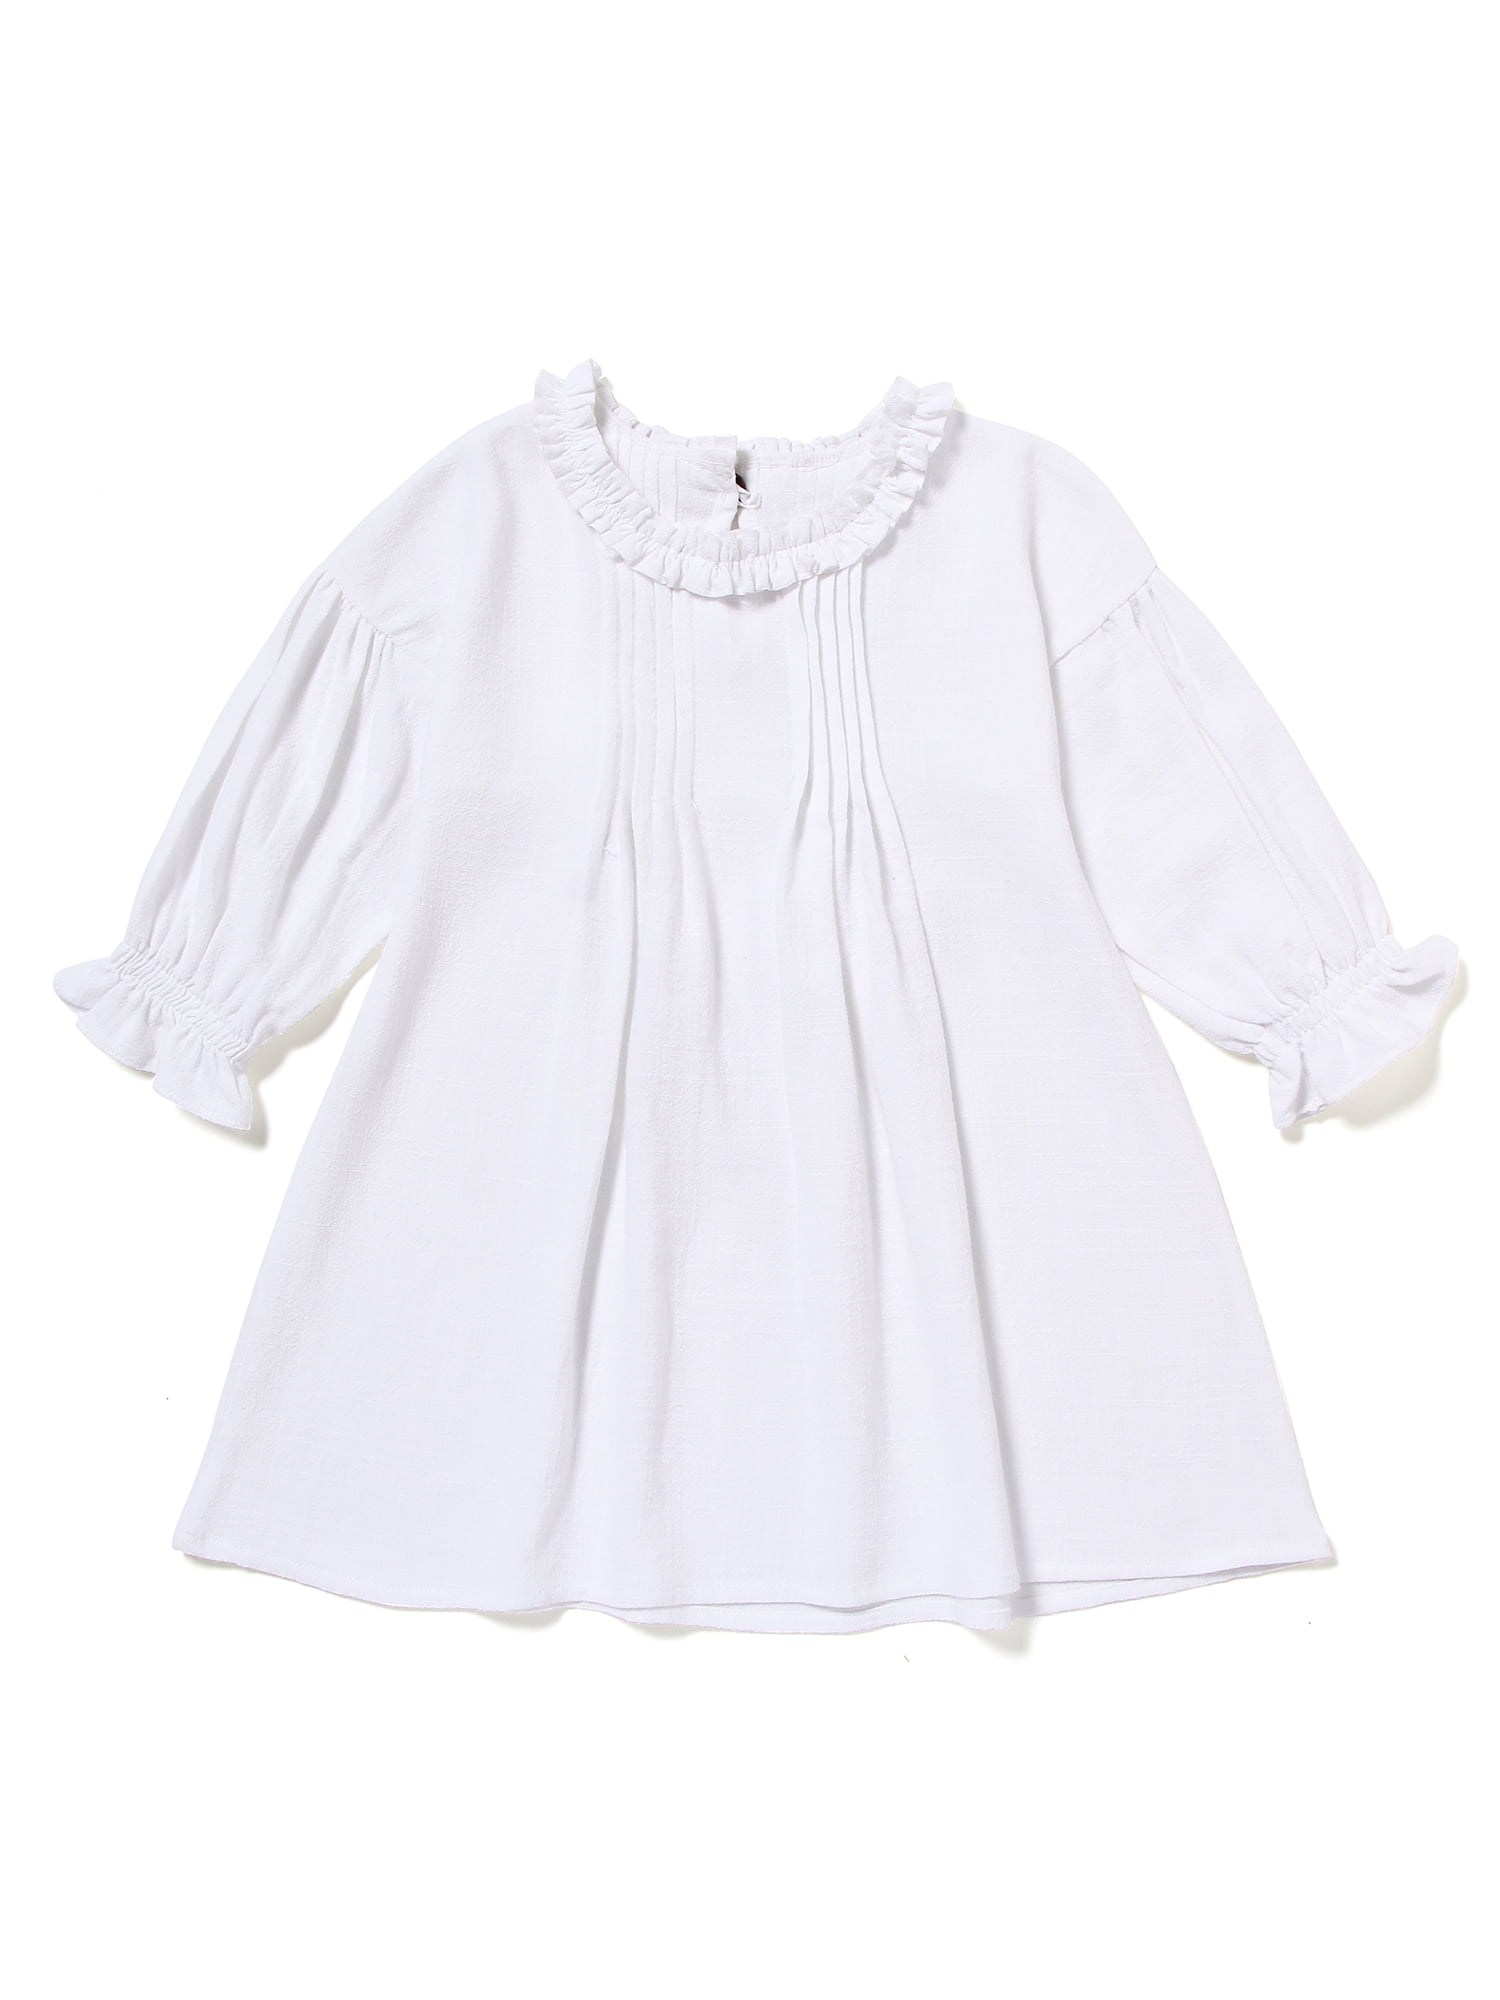 Mary ye Girls Elegant Cotton Linen Dress Kids Sleeveless Ruffle Skirt Sundress